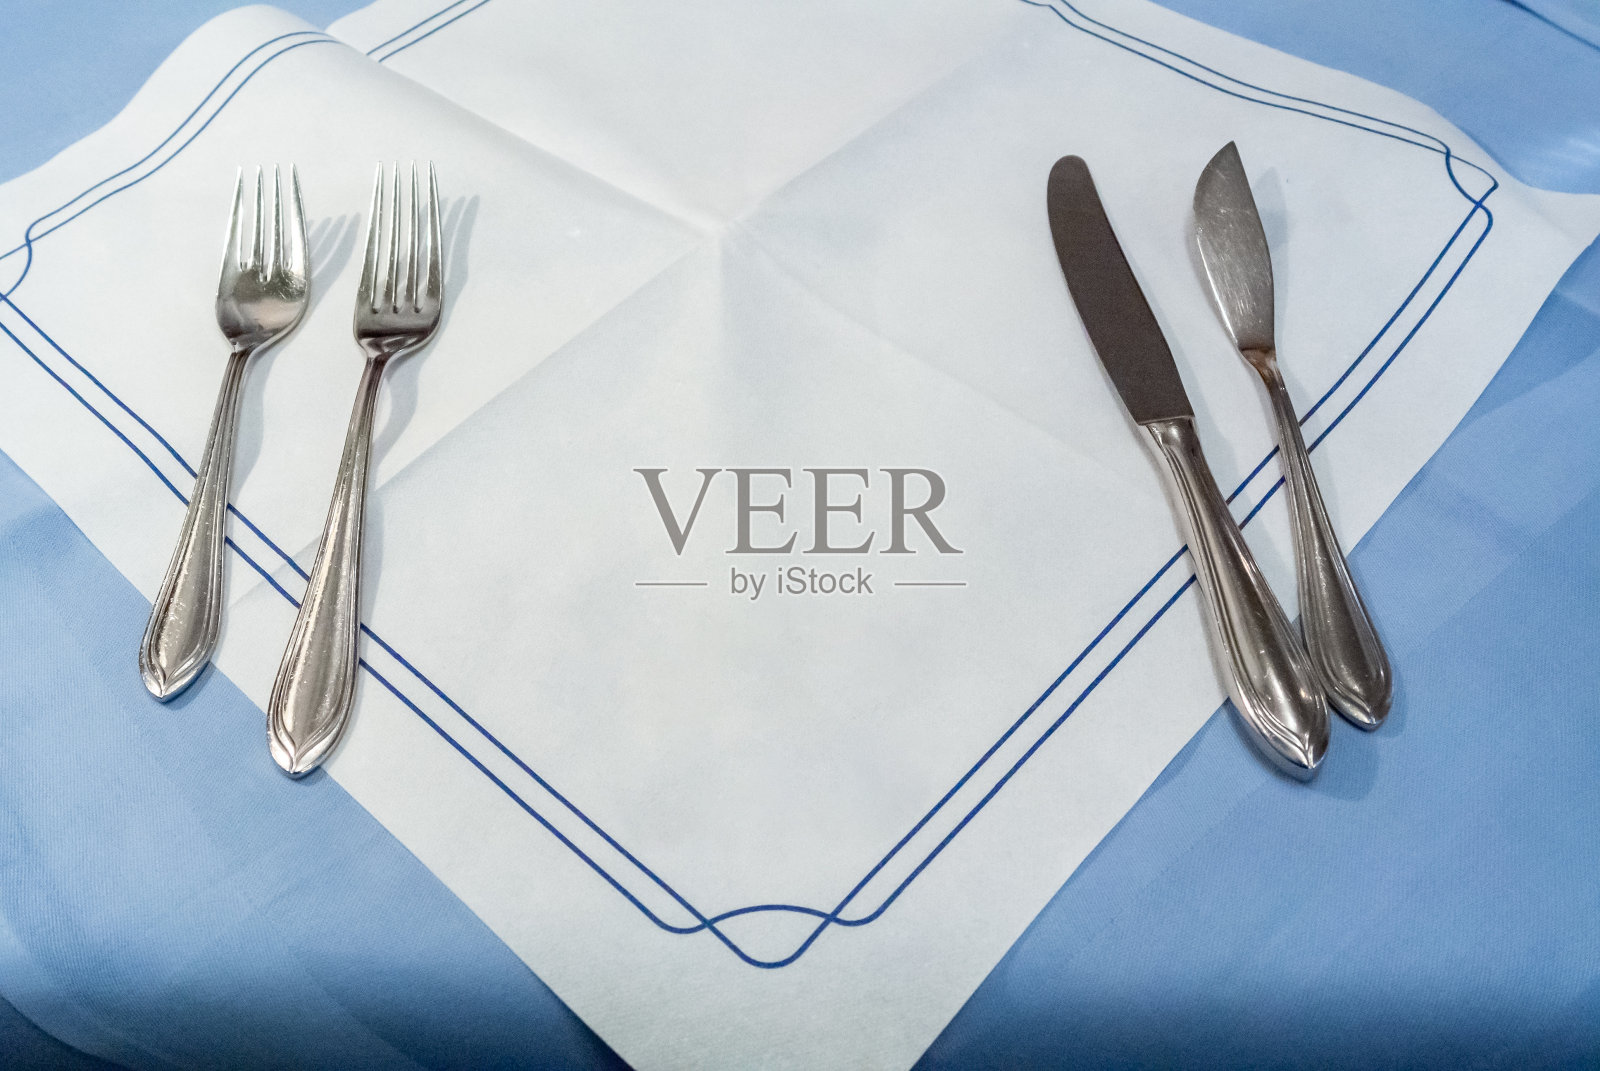 空白白色餐厅餐巾模拟刀叉勺照片摄影图片